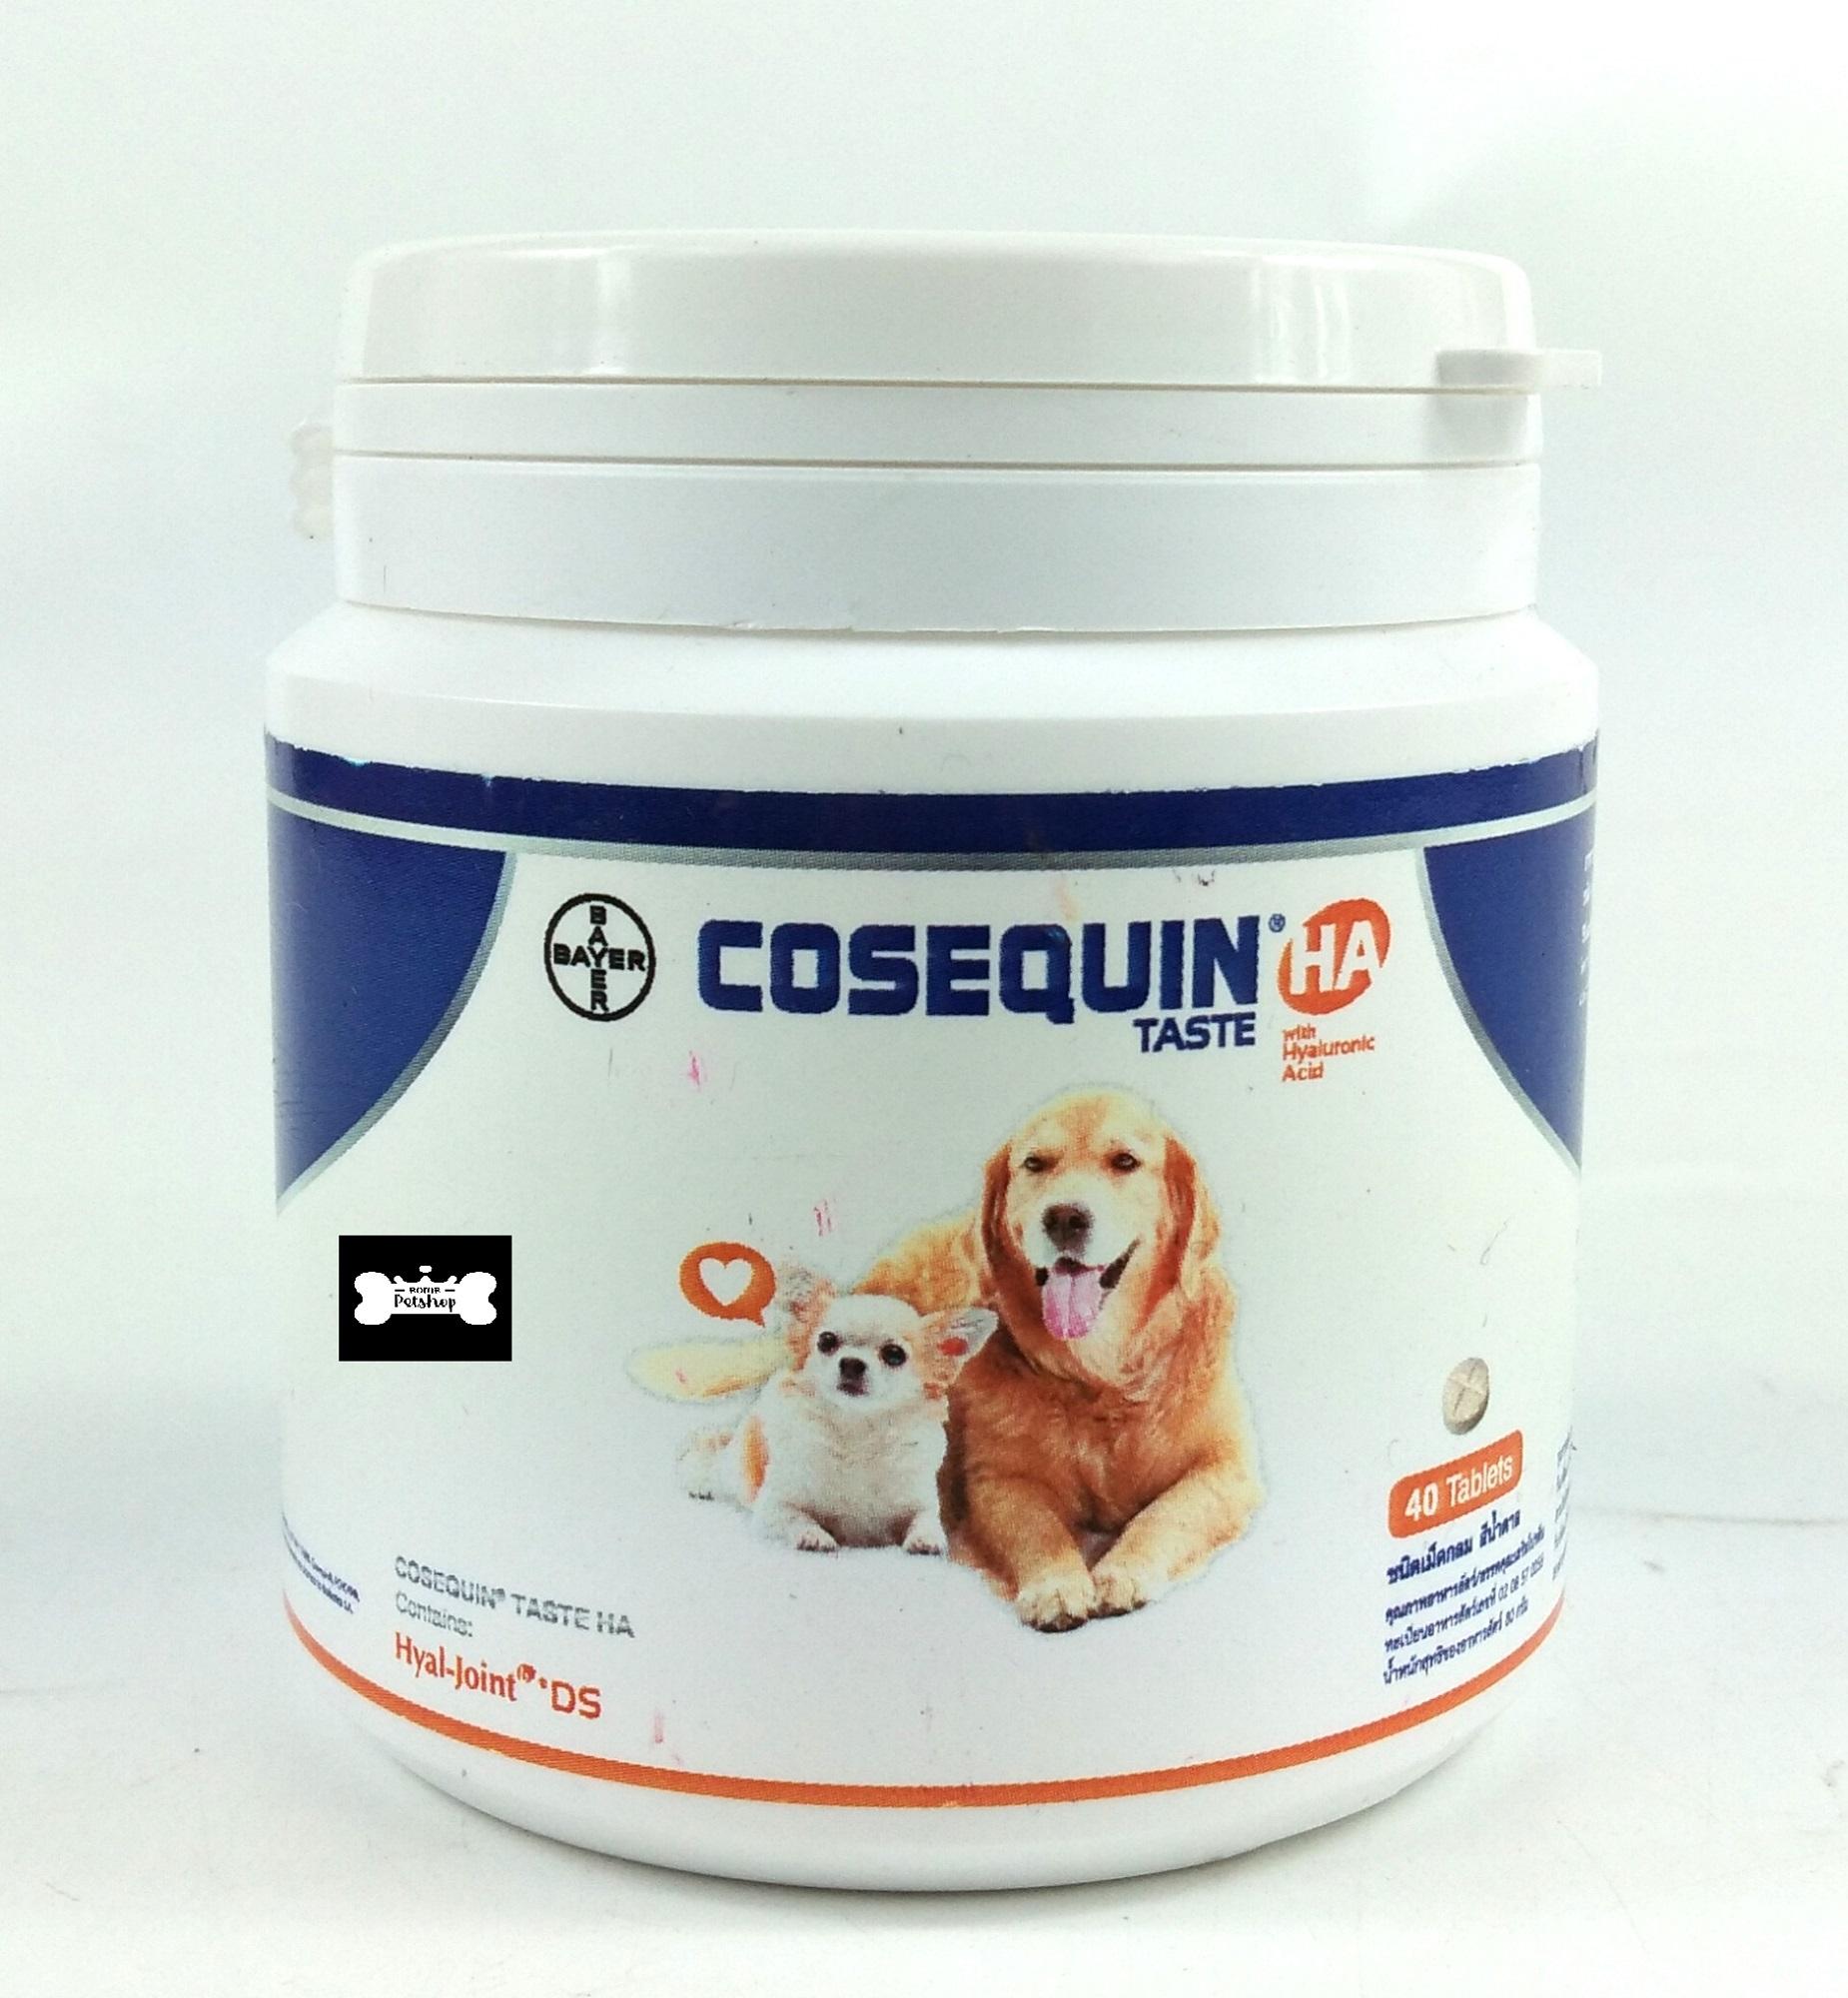 Bayer Cosequin อาหารเสริม ช่วยบำรุงกระดูกและข้อ สำหรับสุนัข 40 เม็ด